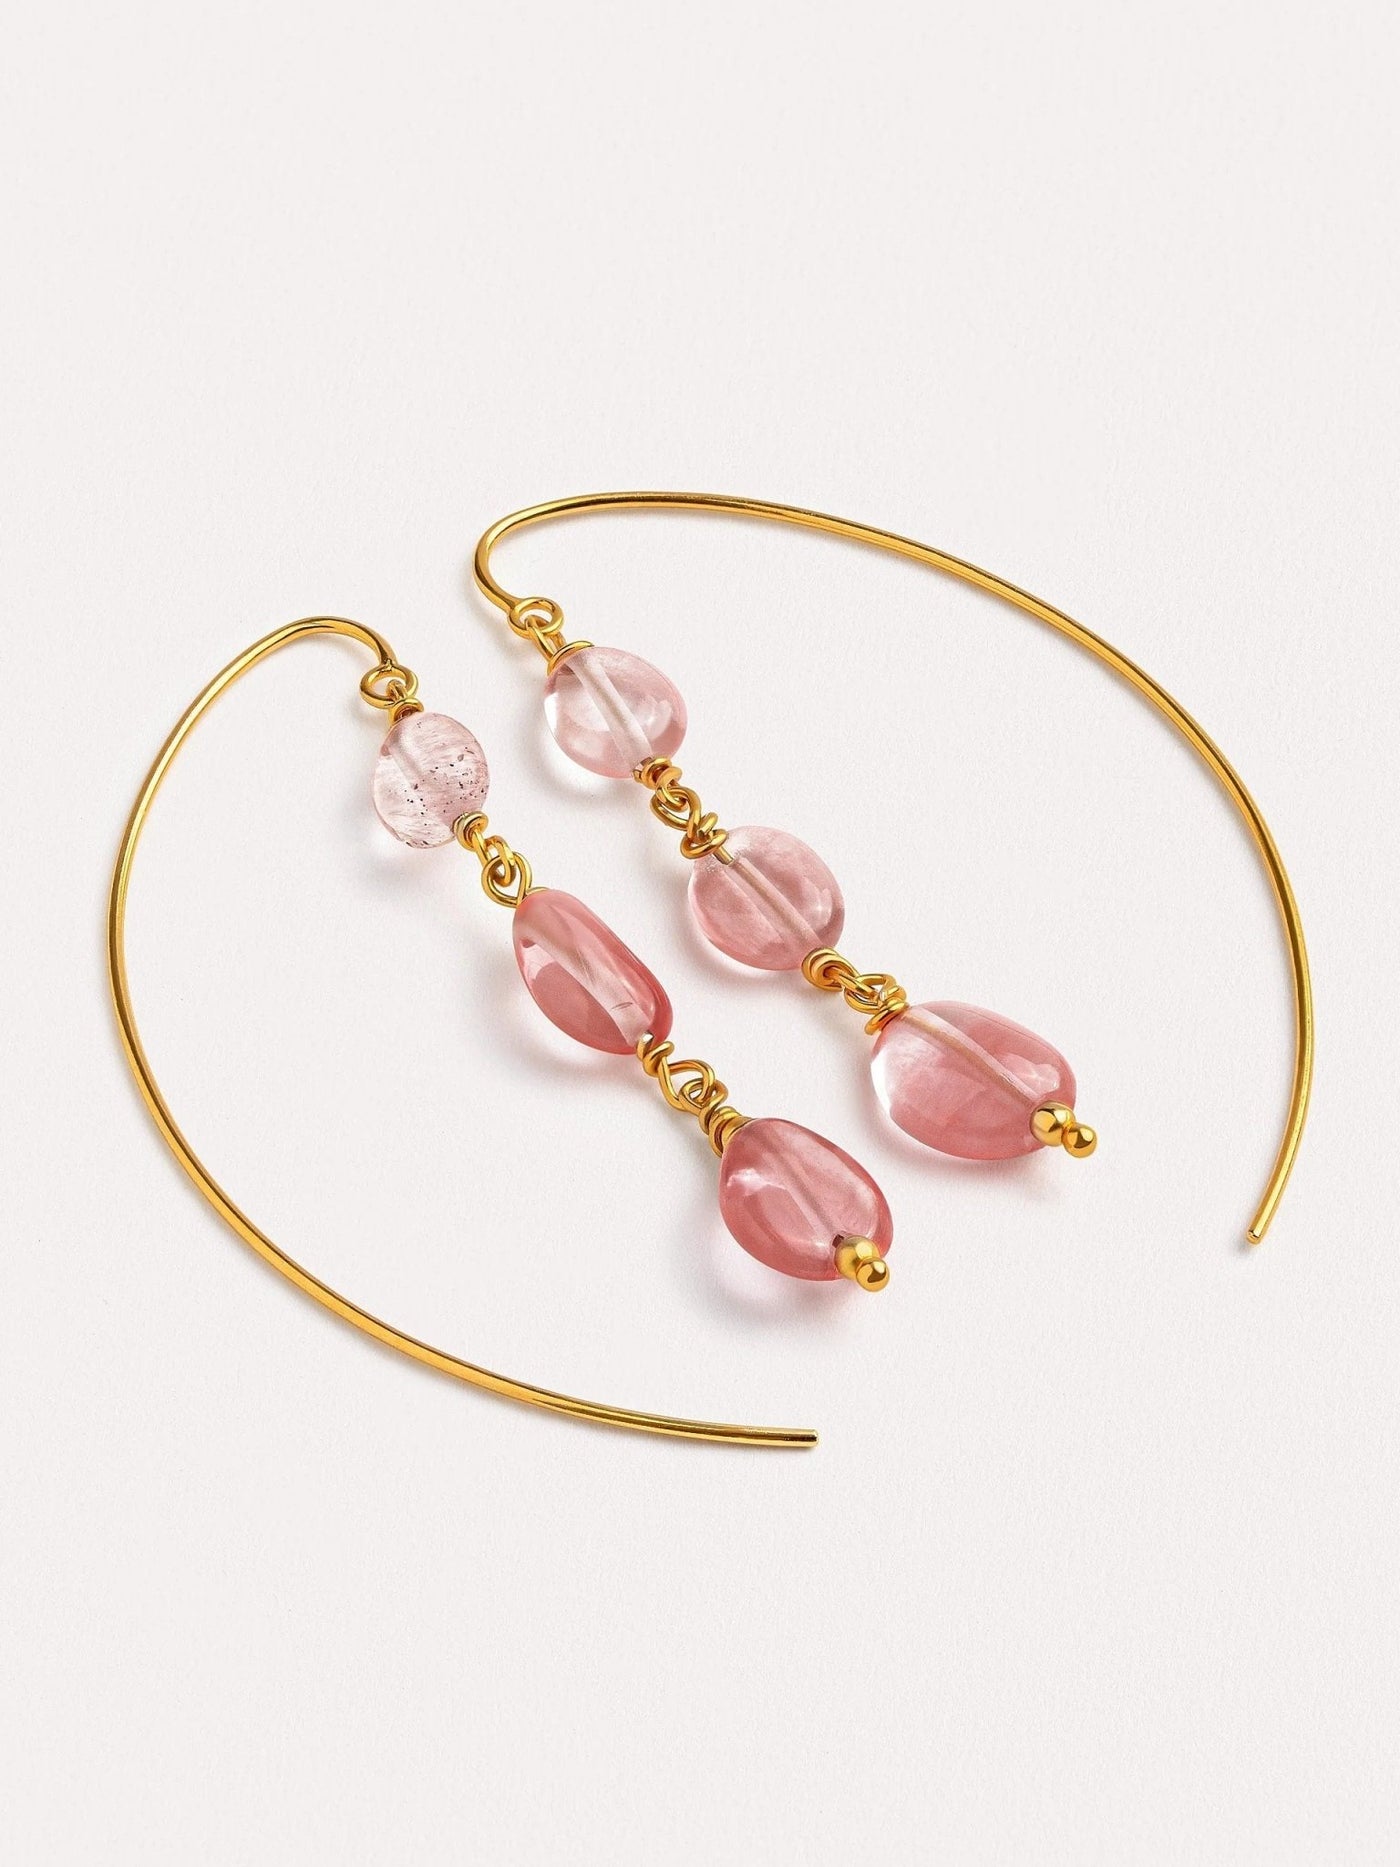 Liz Gold Citrine Hoop Earrings - Cherry Quartz Glassboho earringschandelier earringsLunai Jewelry